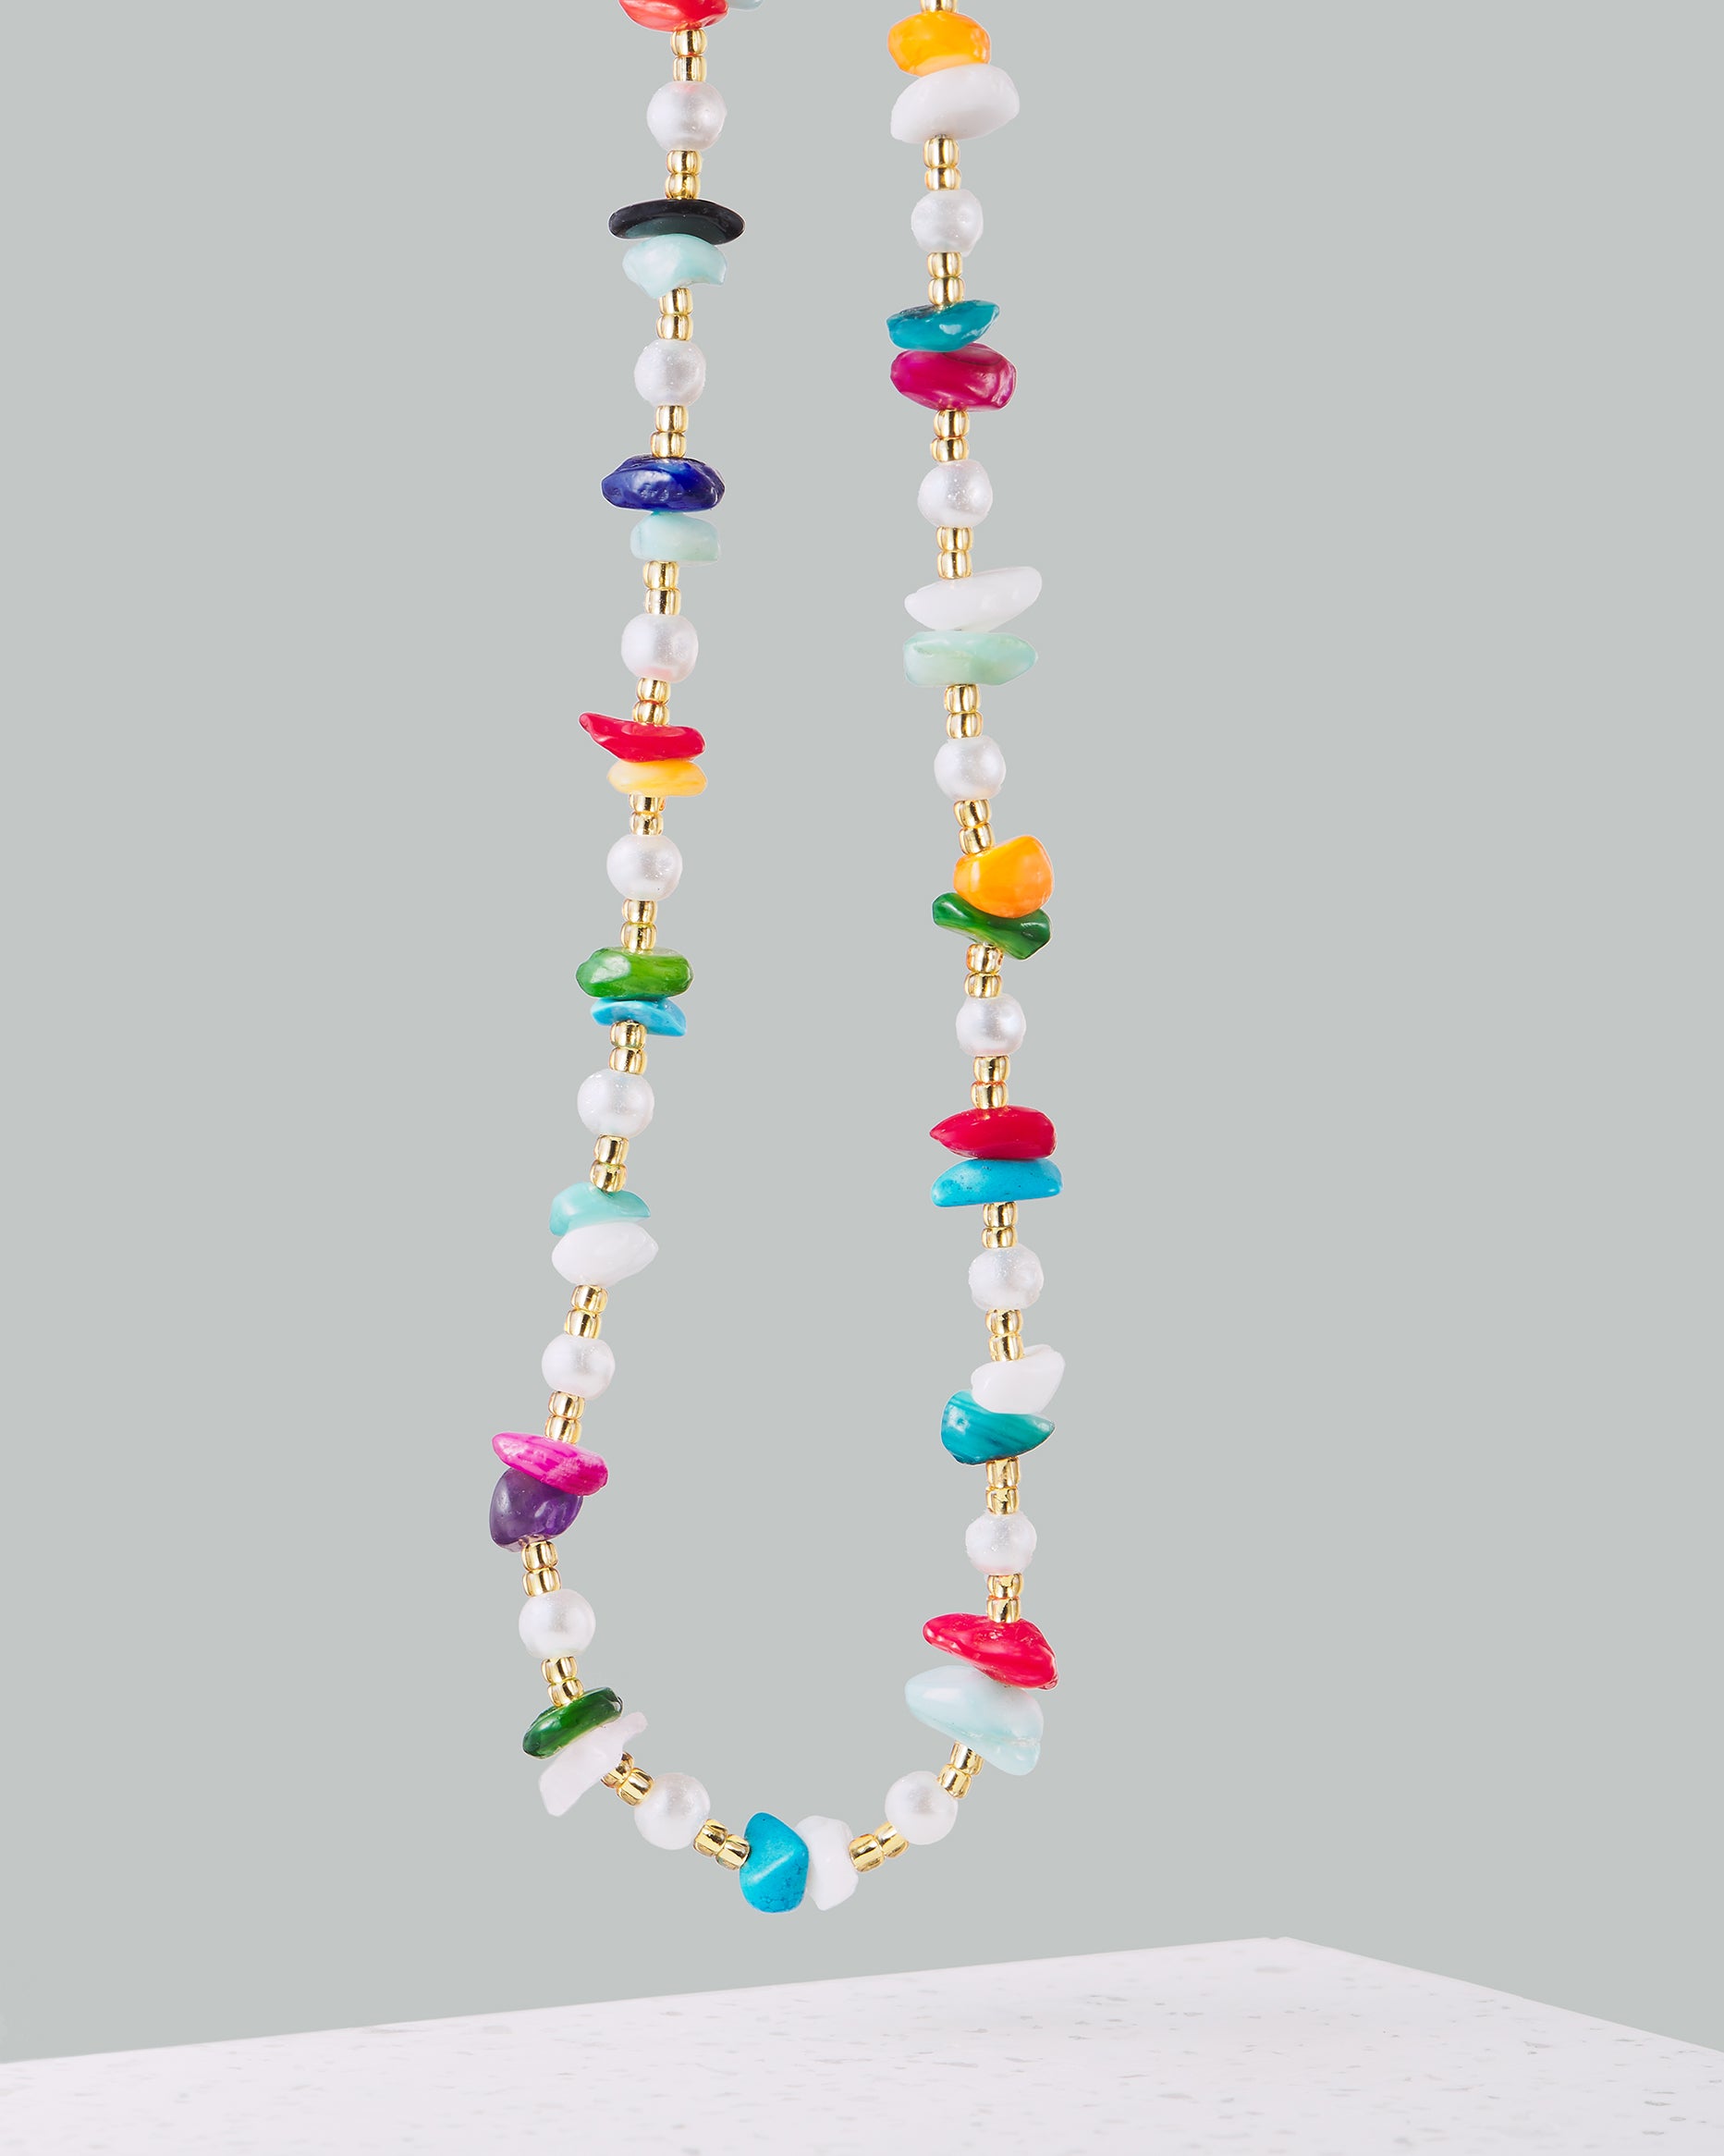 Bunte Kette | Handgemachter Choker mit bunten Perlen und Steinen von VERLAN Jewellery | Flexibel verstellbar mit bunten Steinen | Fair und umweltschonend handmade in Bali